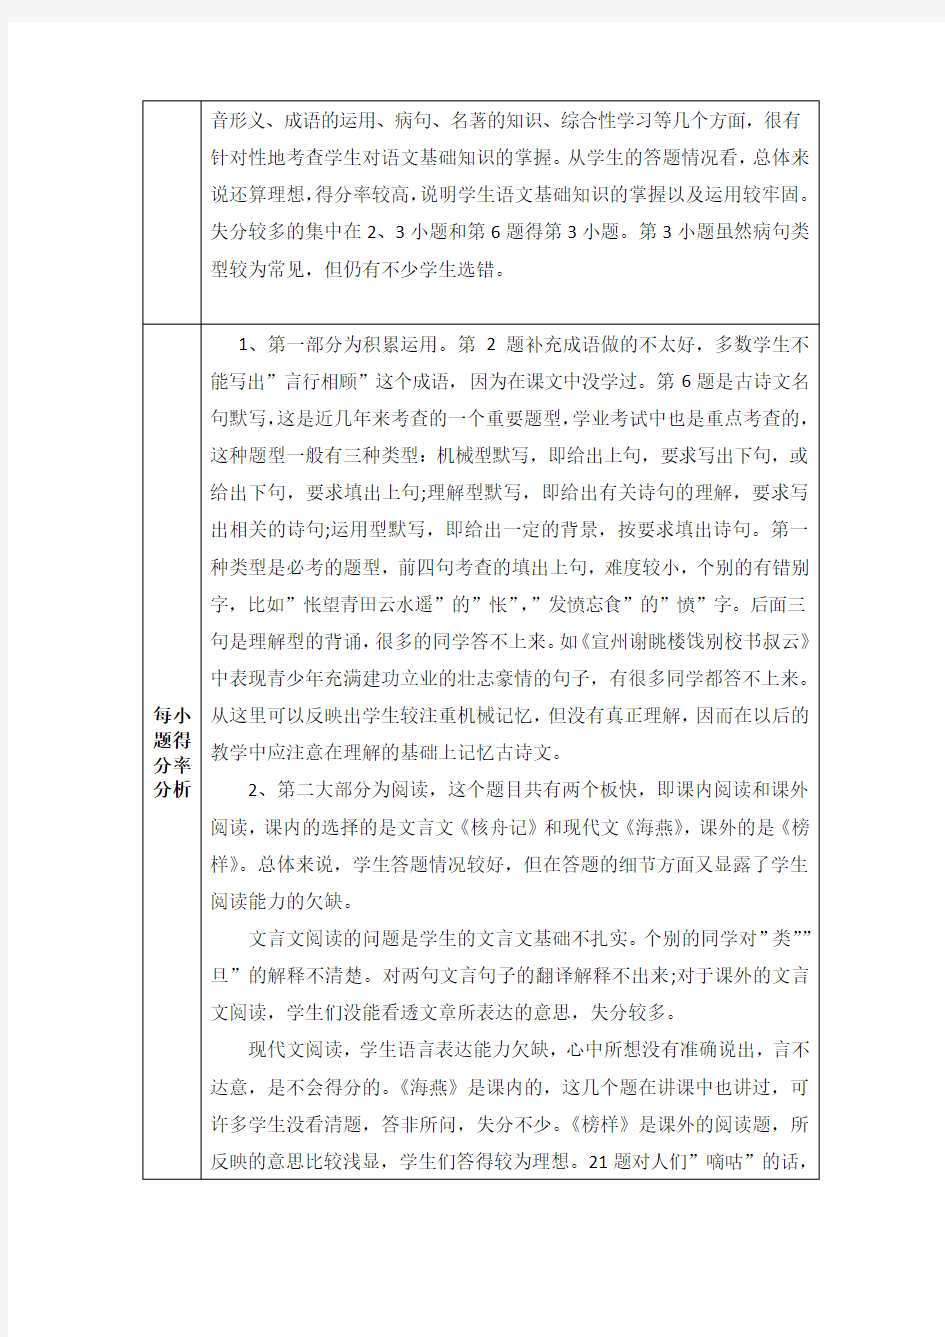 初中语文单元教学质量分析报告1